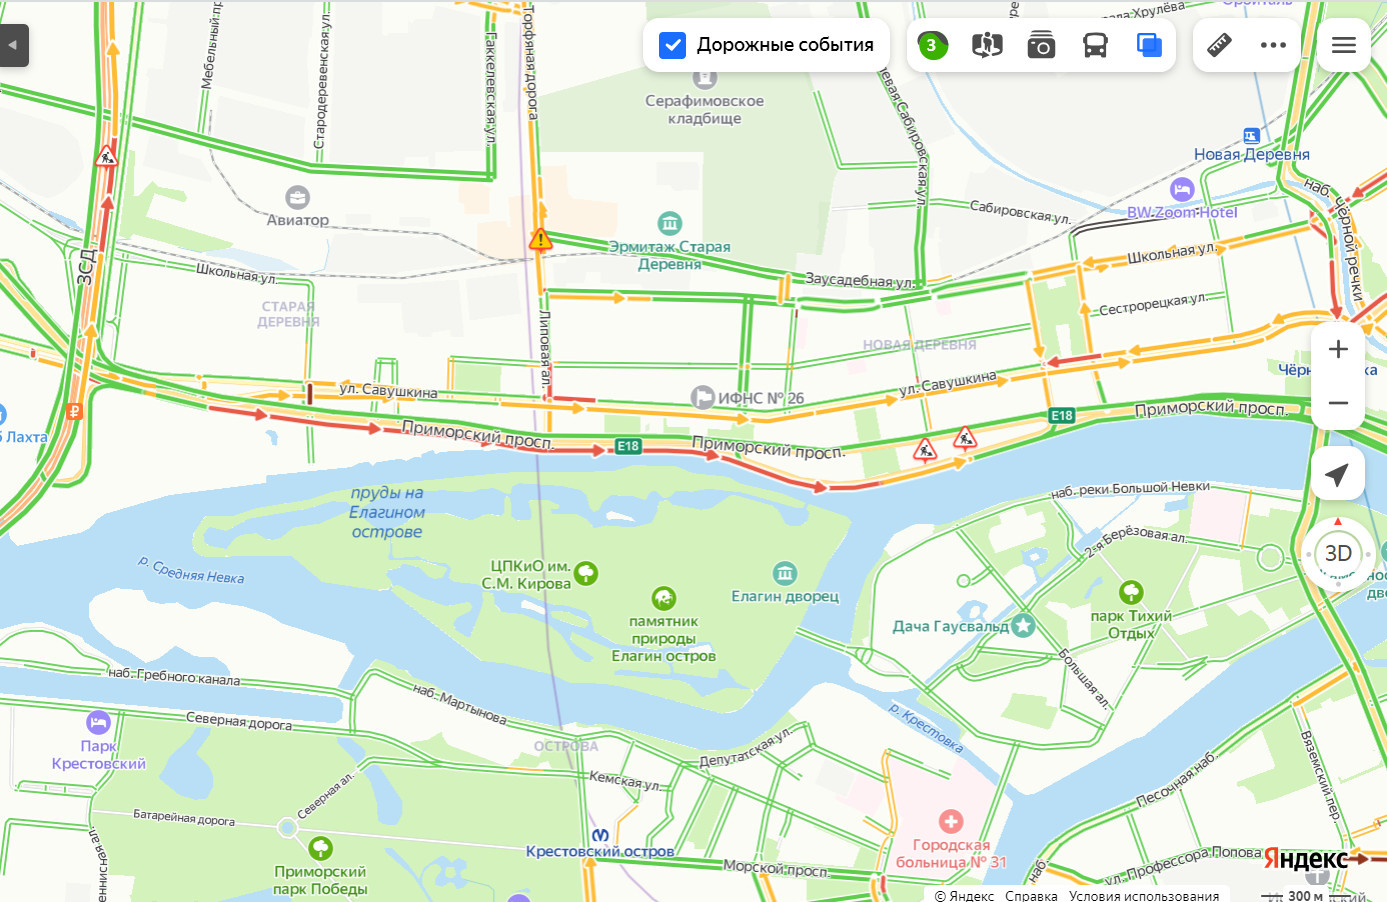 Пробок в Петербурге становится больше. До сих пор стоят магистрали на въезд в город